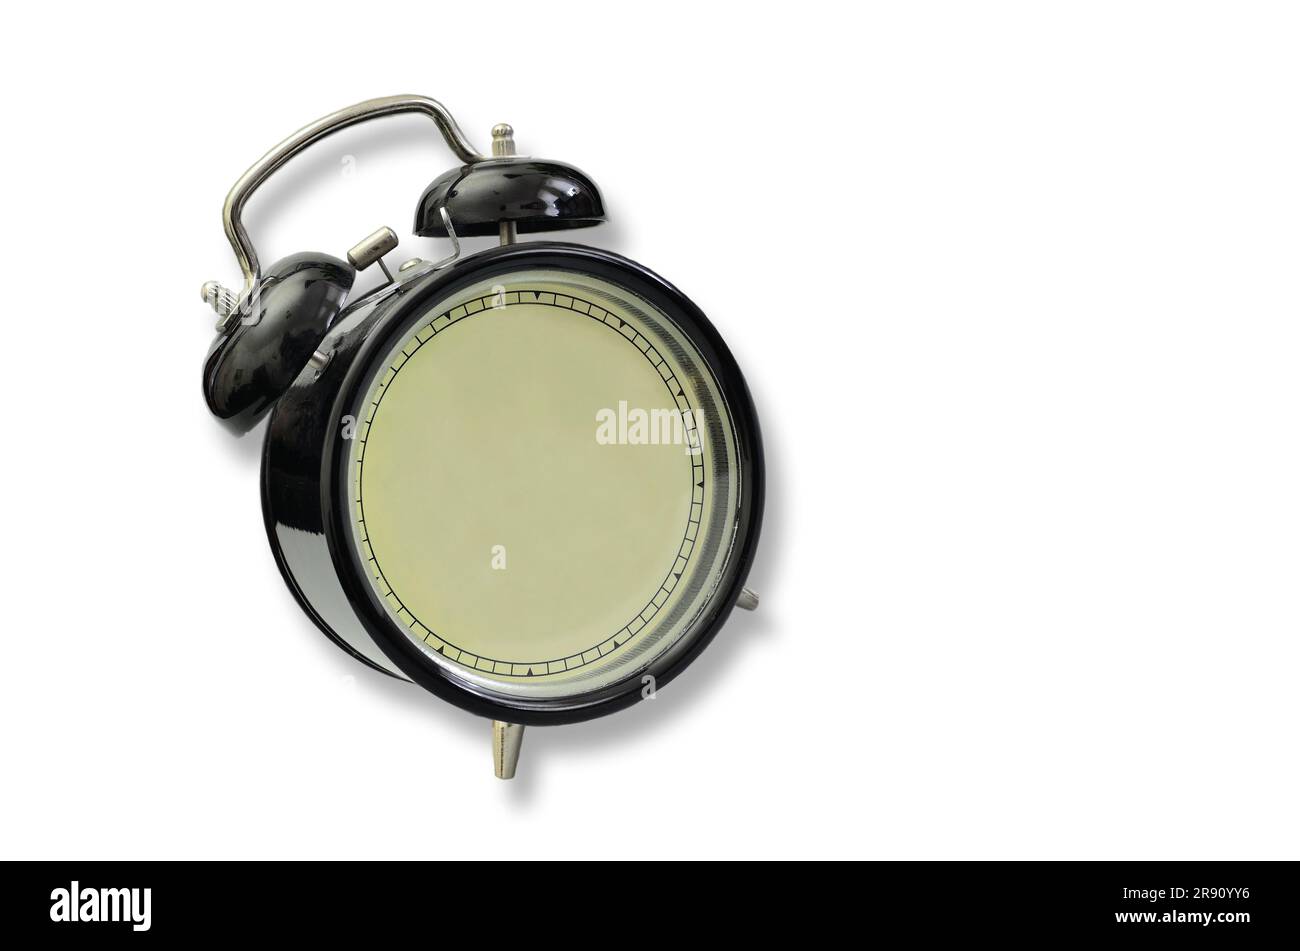 Blank alaram clock, close up, isolated on white background Stock Photo